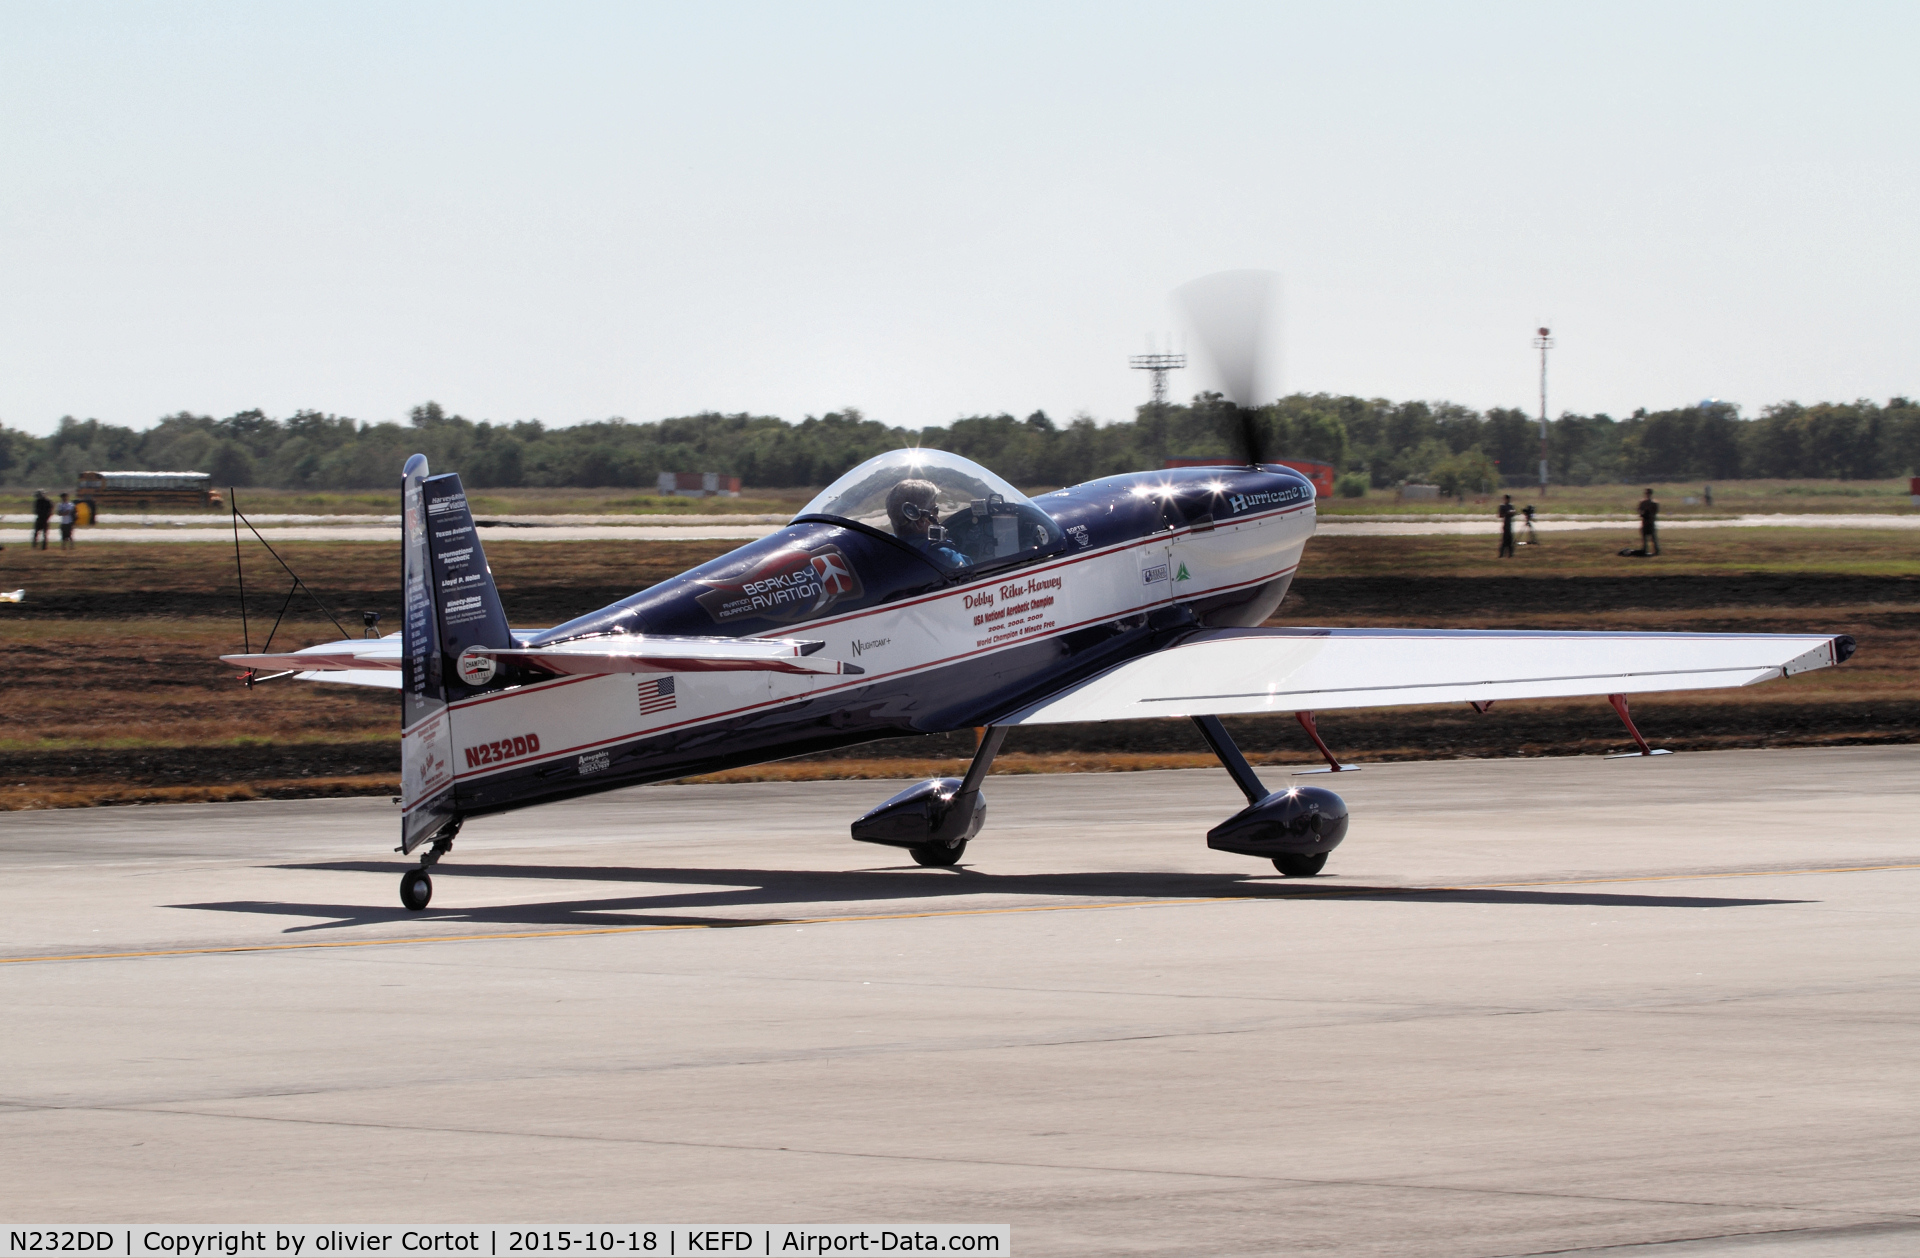 N232DD, 2000 Mudry CAP-232 C/N 24, Houston airshow